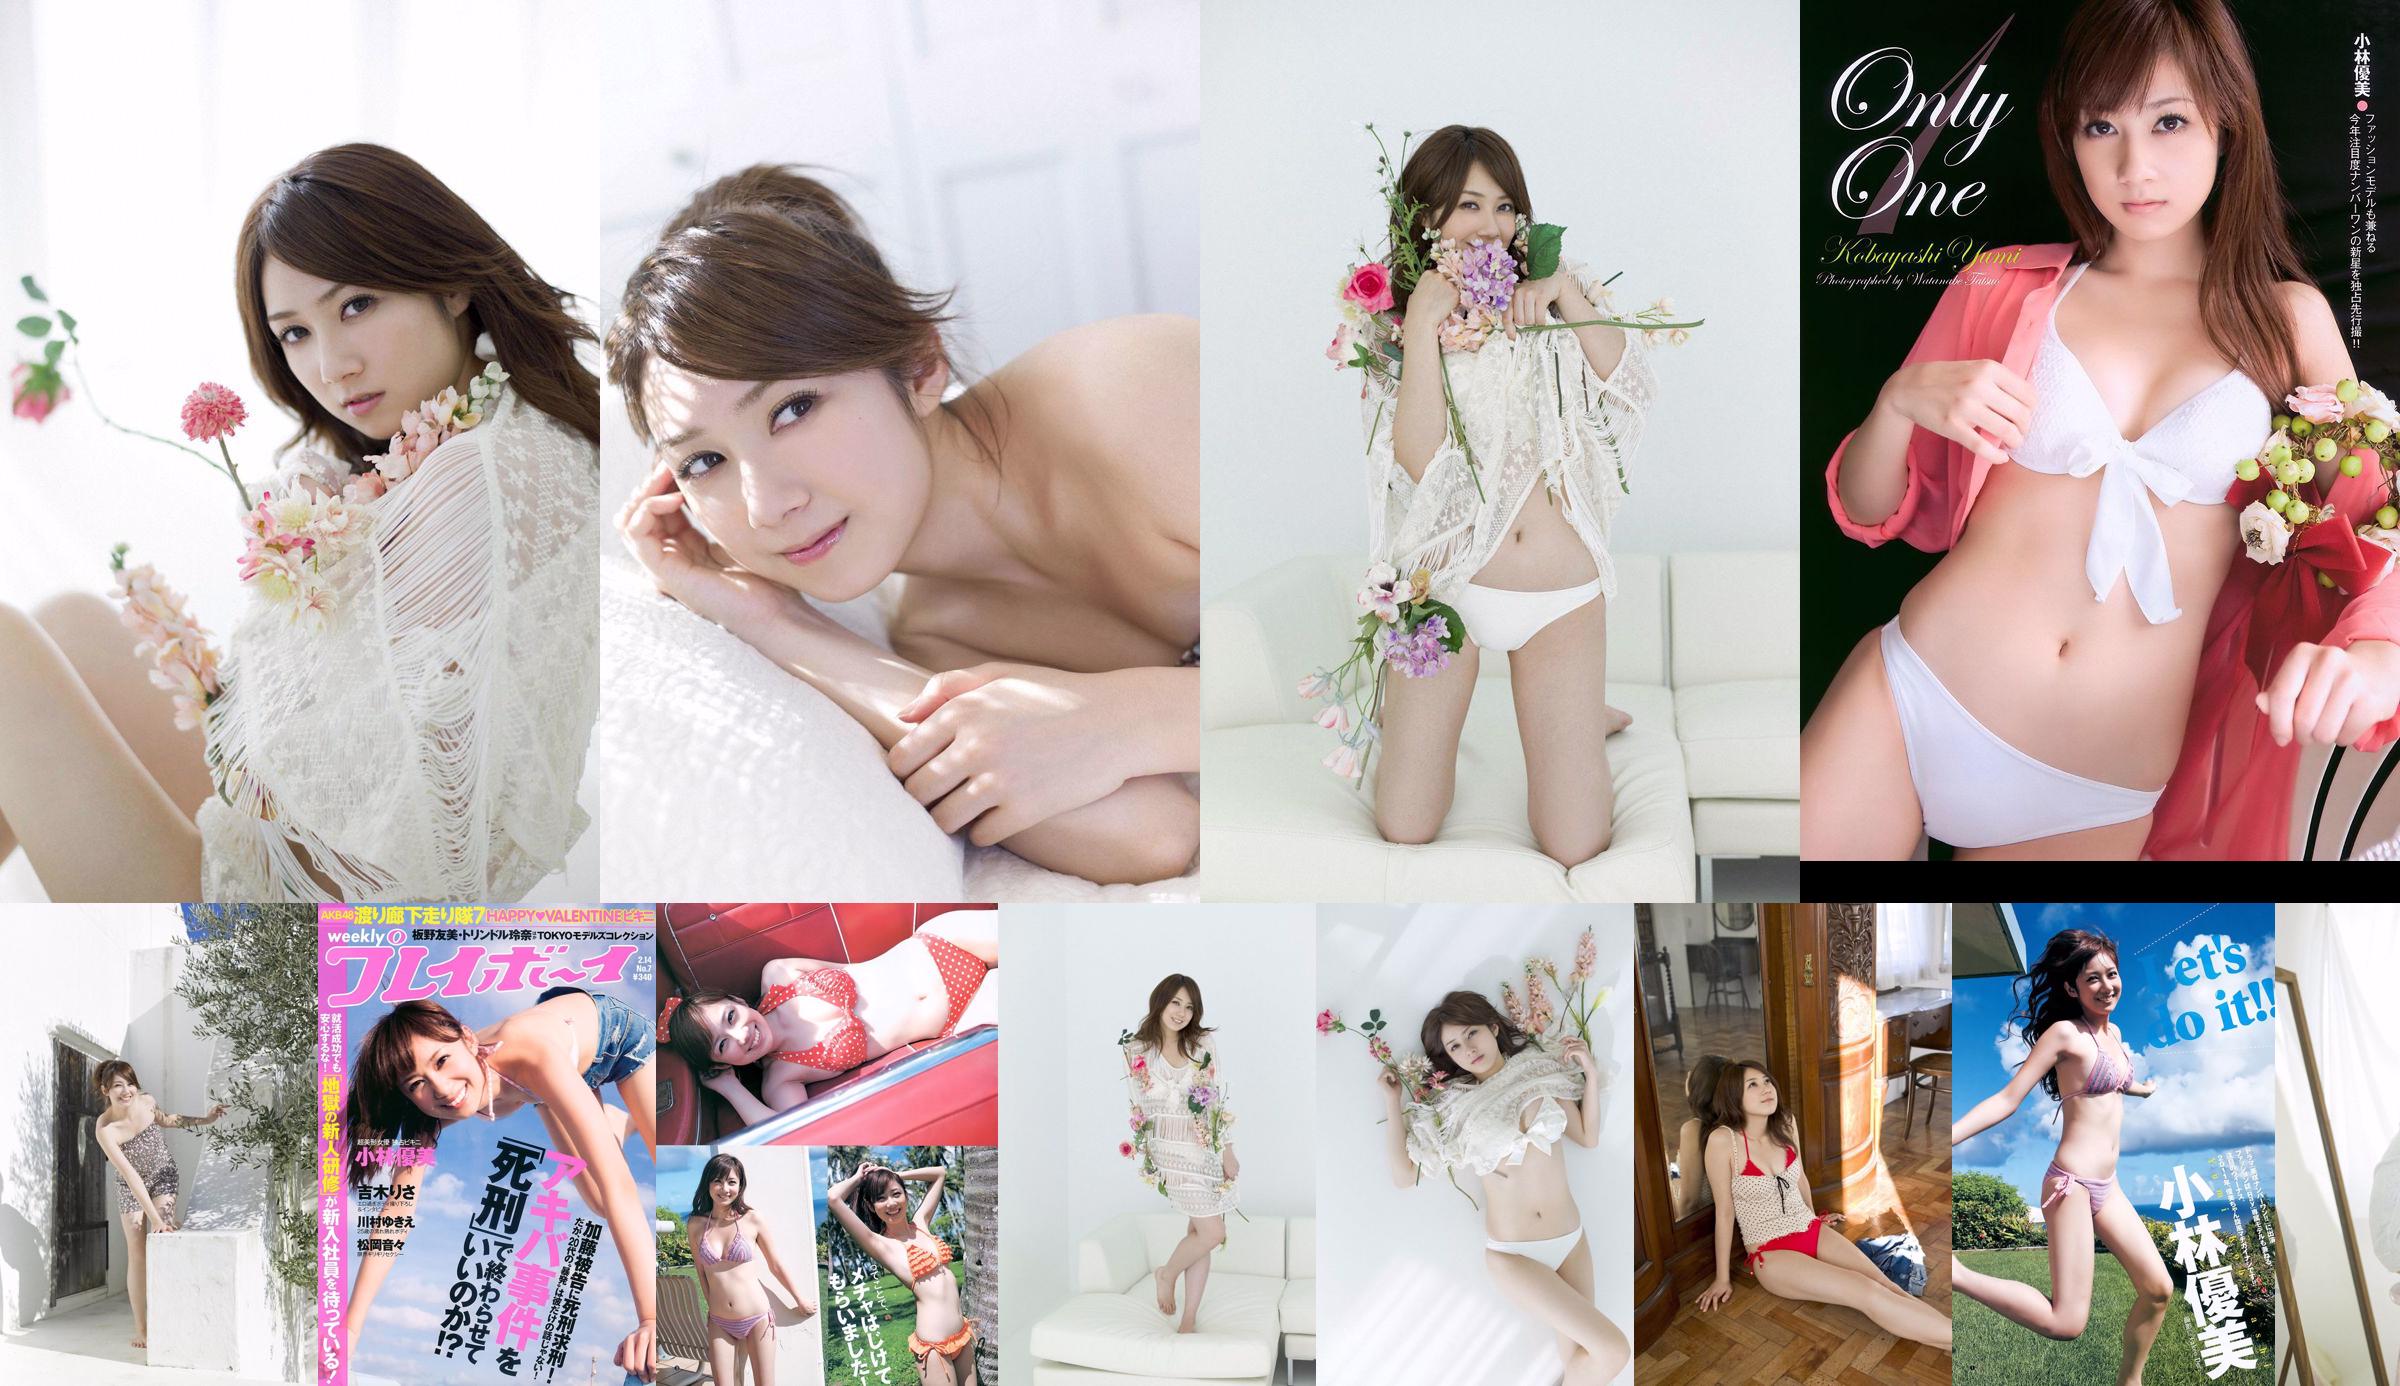 Kobayashi Yumi Shinoda Mariko [Wekelijkse Young Jump] 2011 No.11 Photo Magazine No.fa6abc Pagina 3